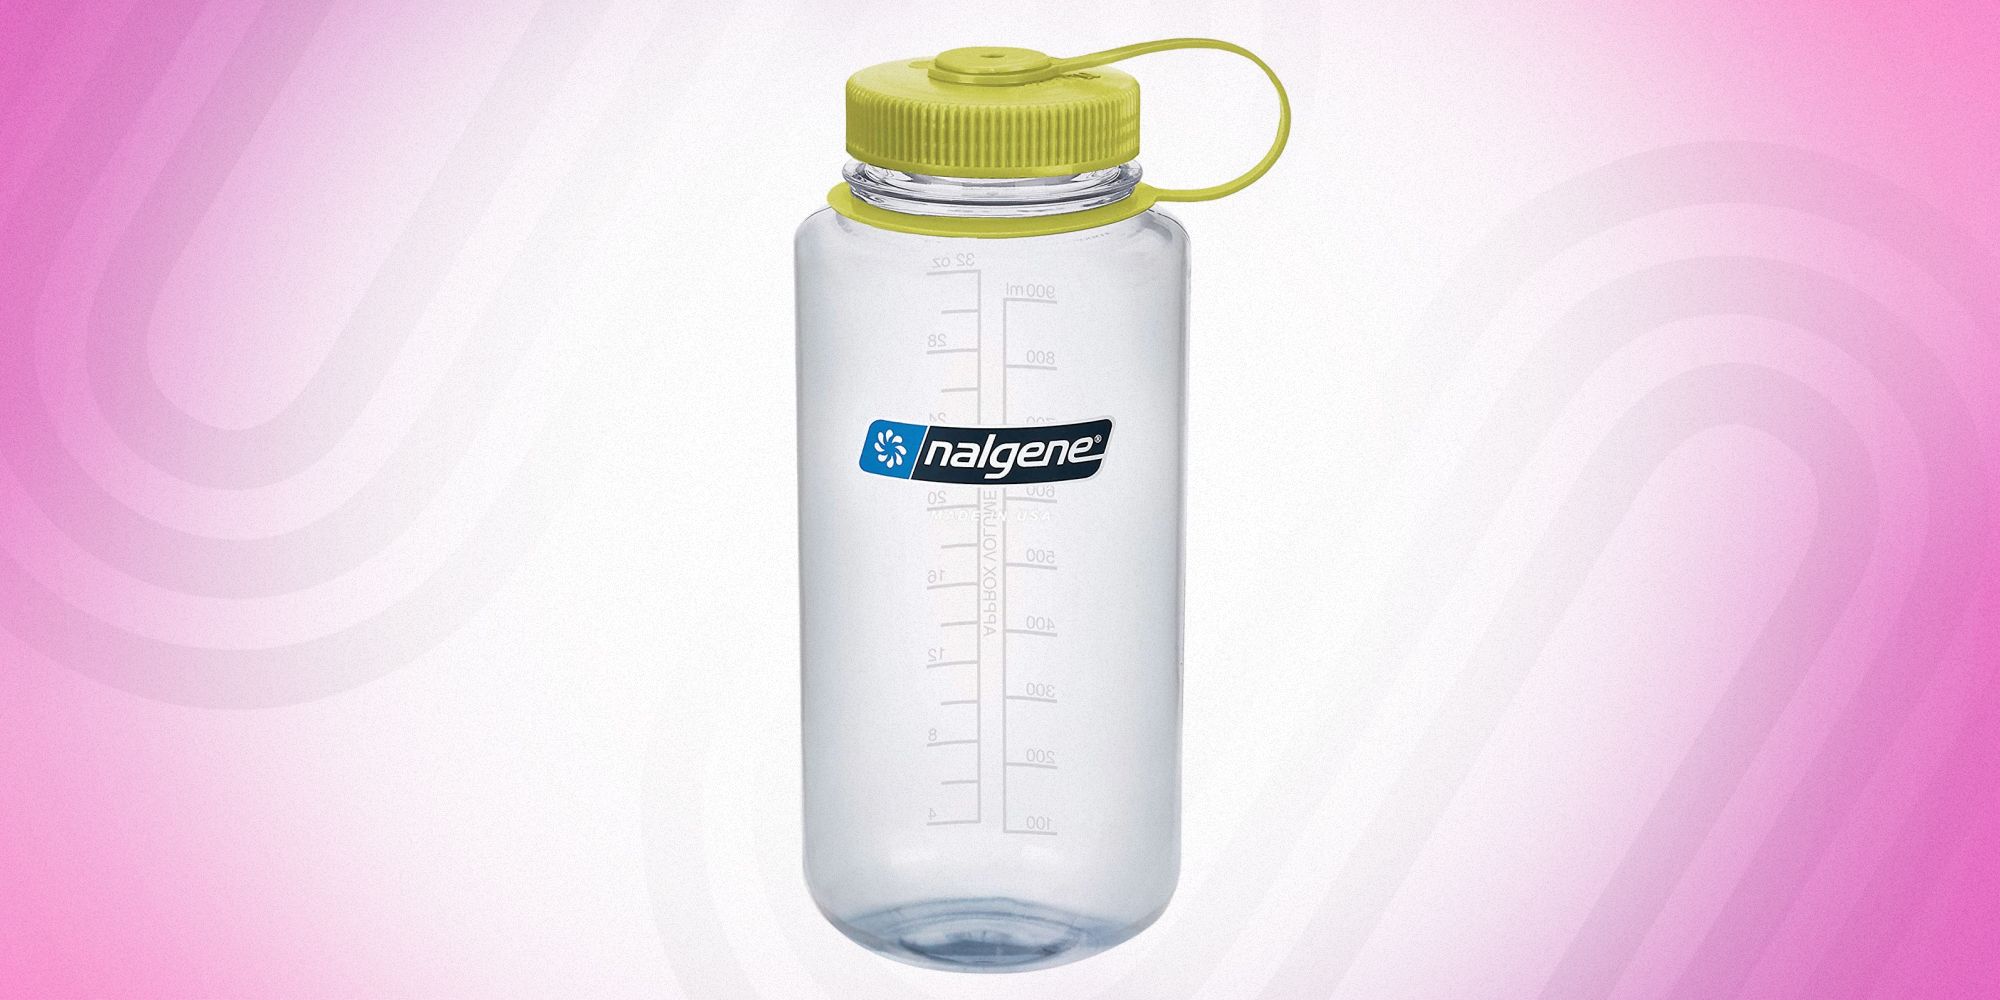 The Outset Nalgene Water Bottle